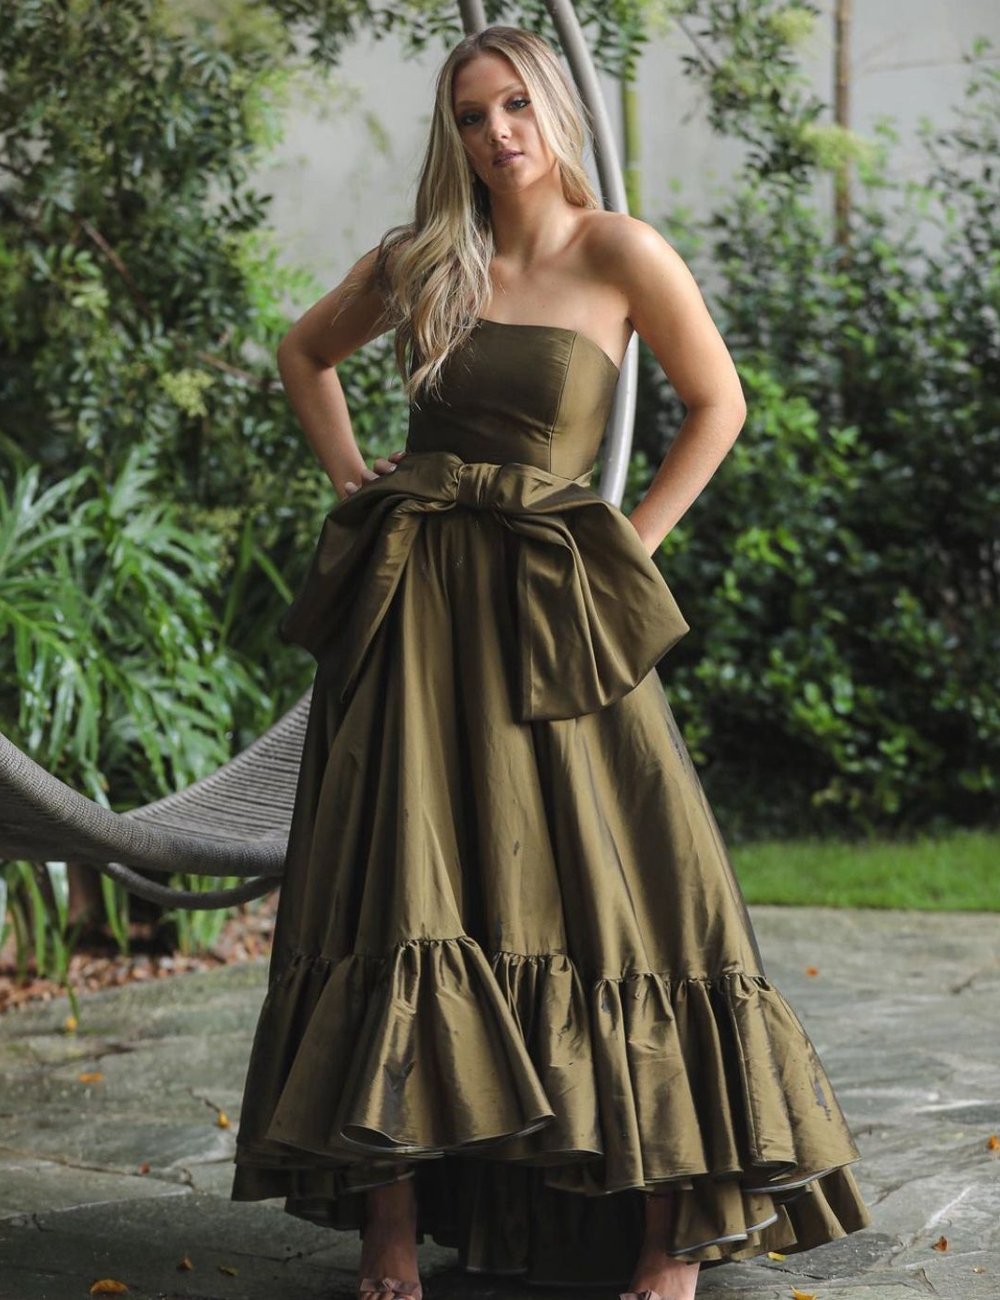 One Dress Upon A Time - vestido - cor de vestido de festa - vestido de festa - moda festa - https://stealthelook.com.br